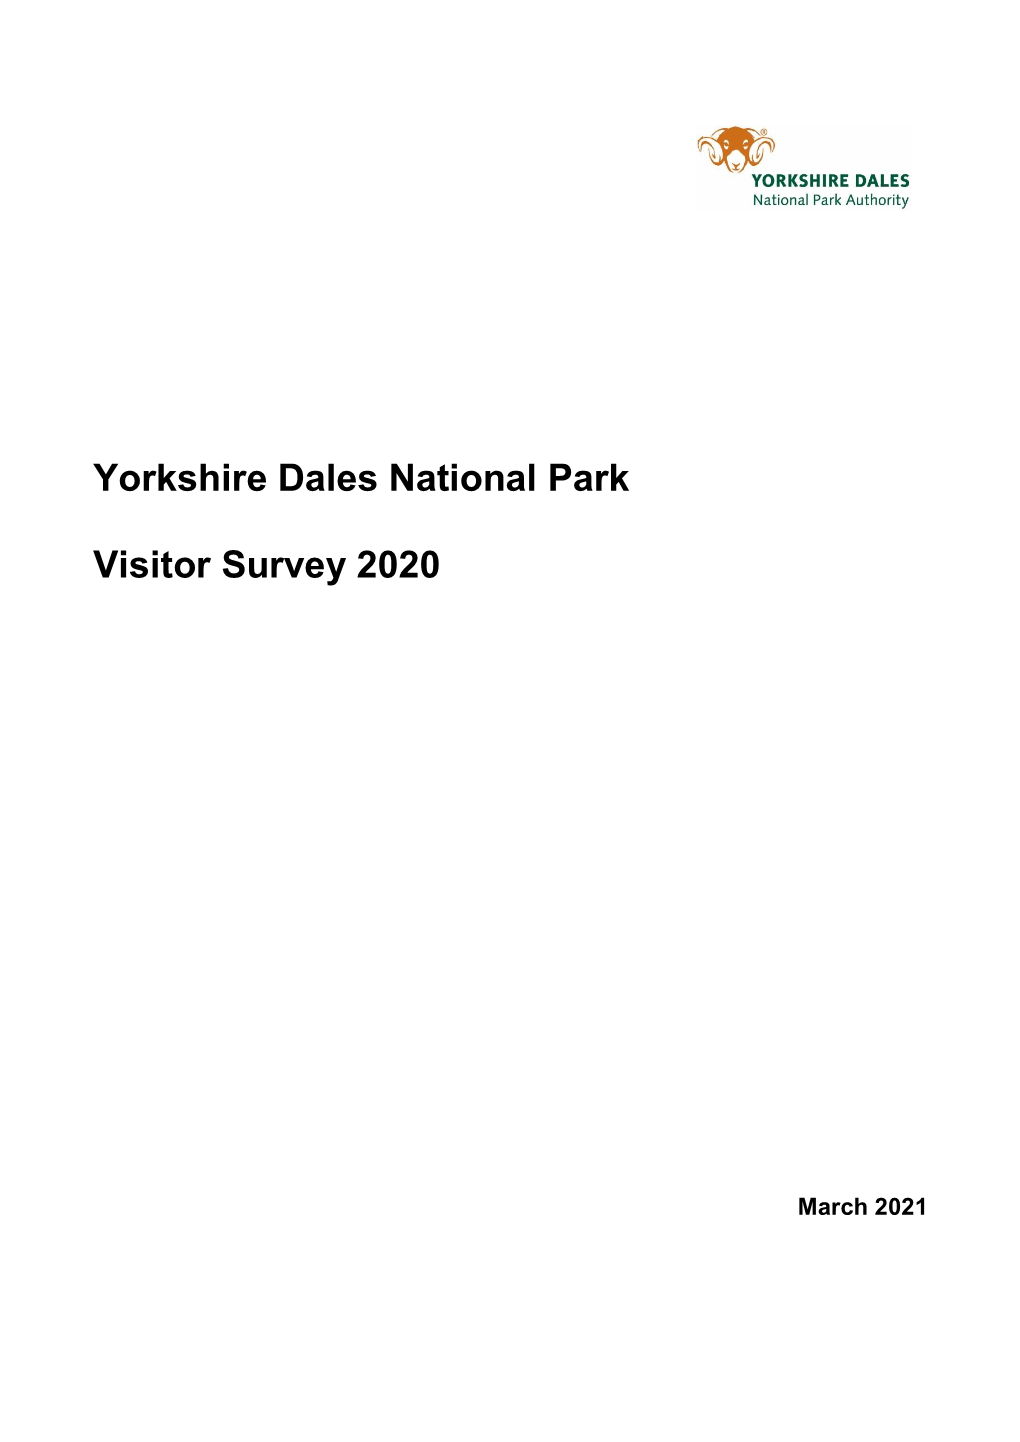 Yorkshire Dales National Park Visitor Survey 2020